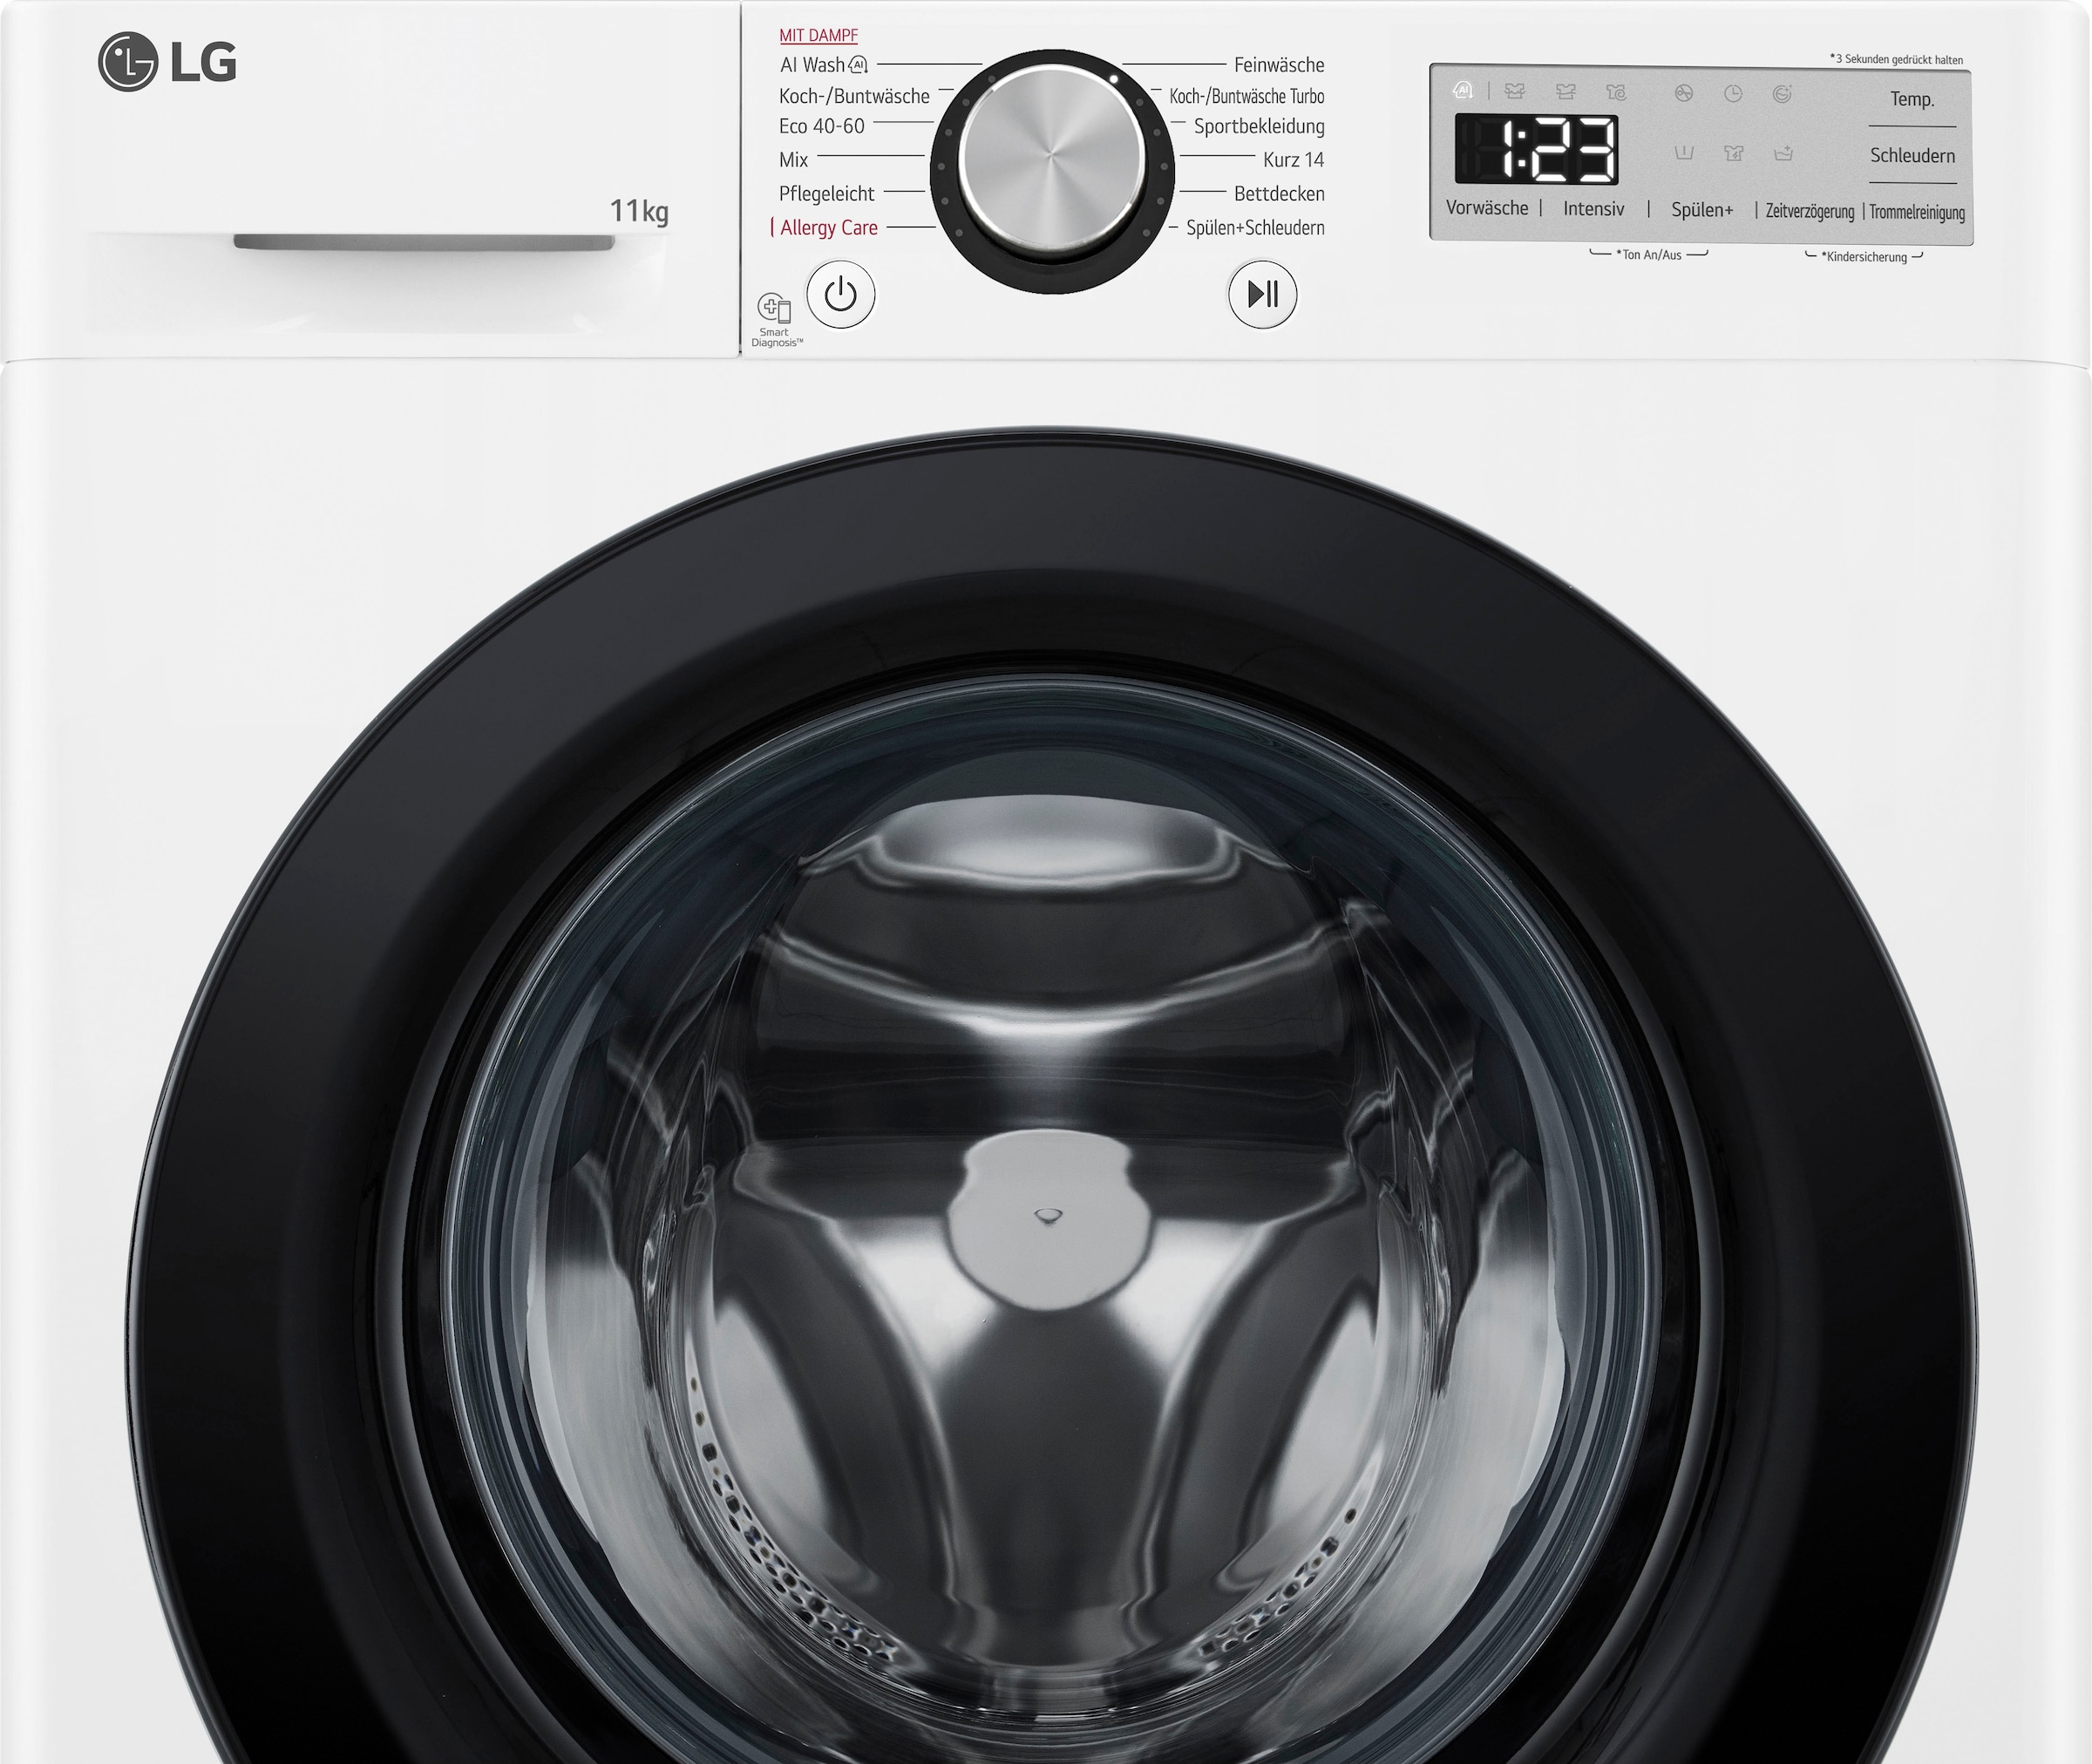 LG Waschmaschine »F4WR4911P«, Serie 5, F4WR4911P, 11 kg, 1400 U/min, Steam-Funktion, 4 Jahre Garantie inklusive